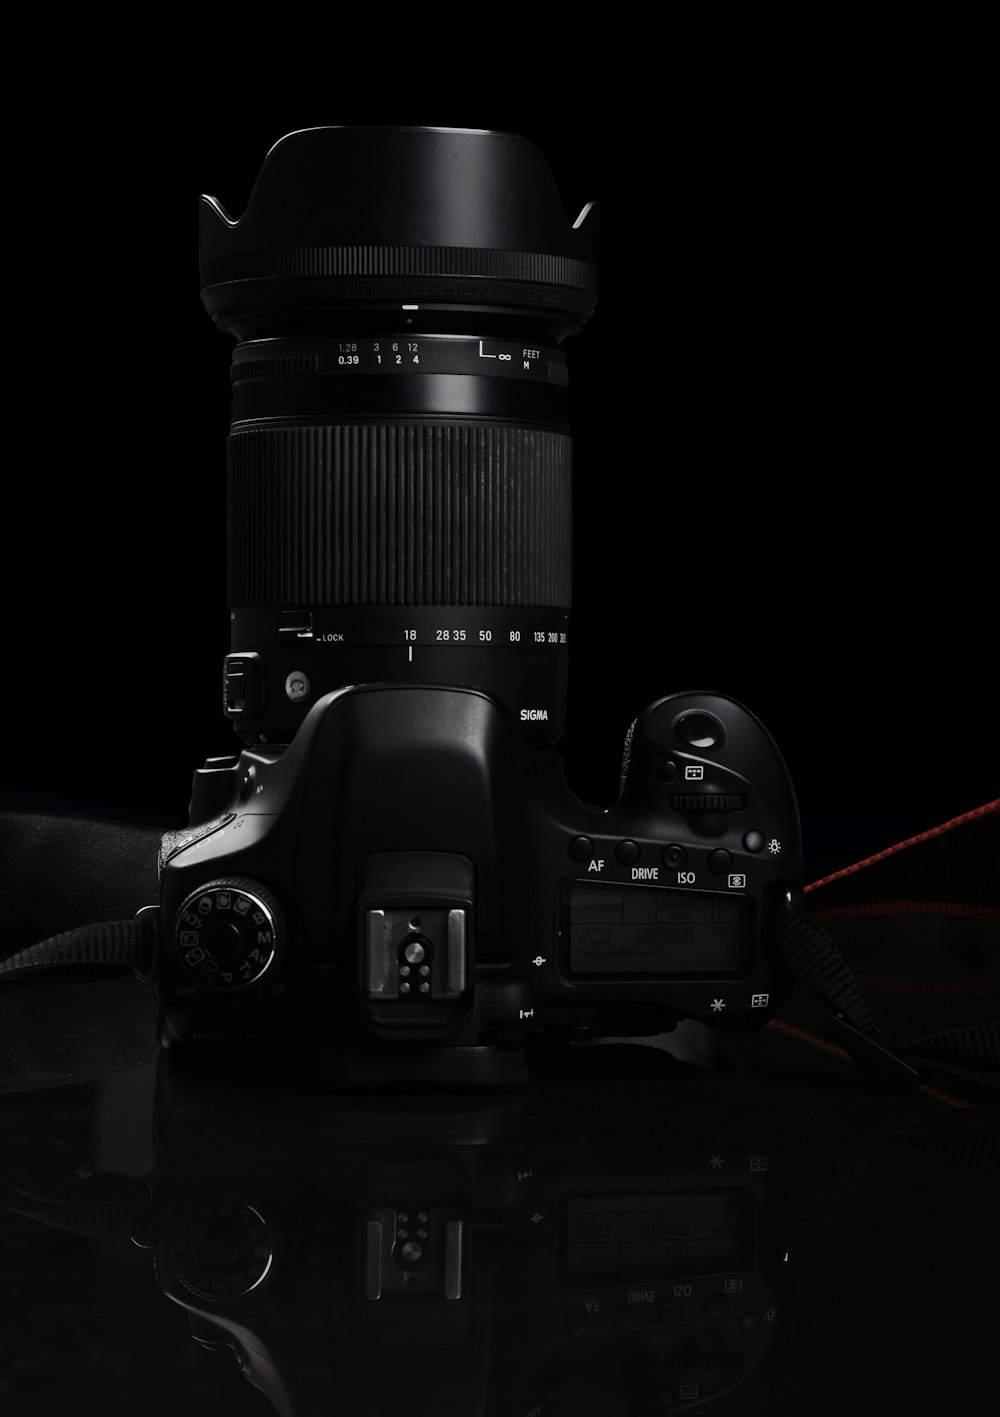 black nikon dslr camera on black surface